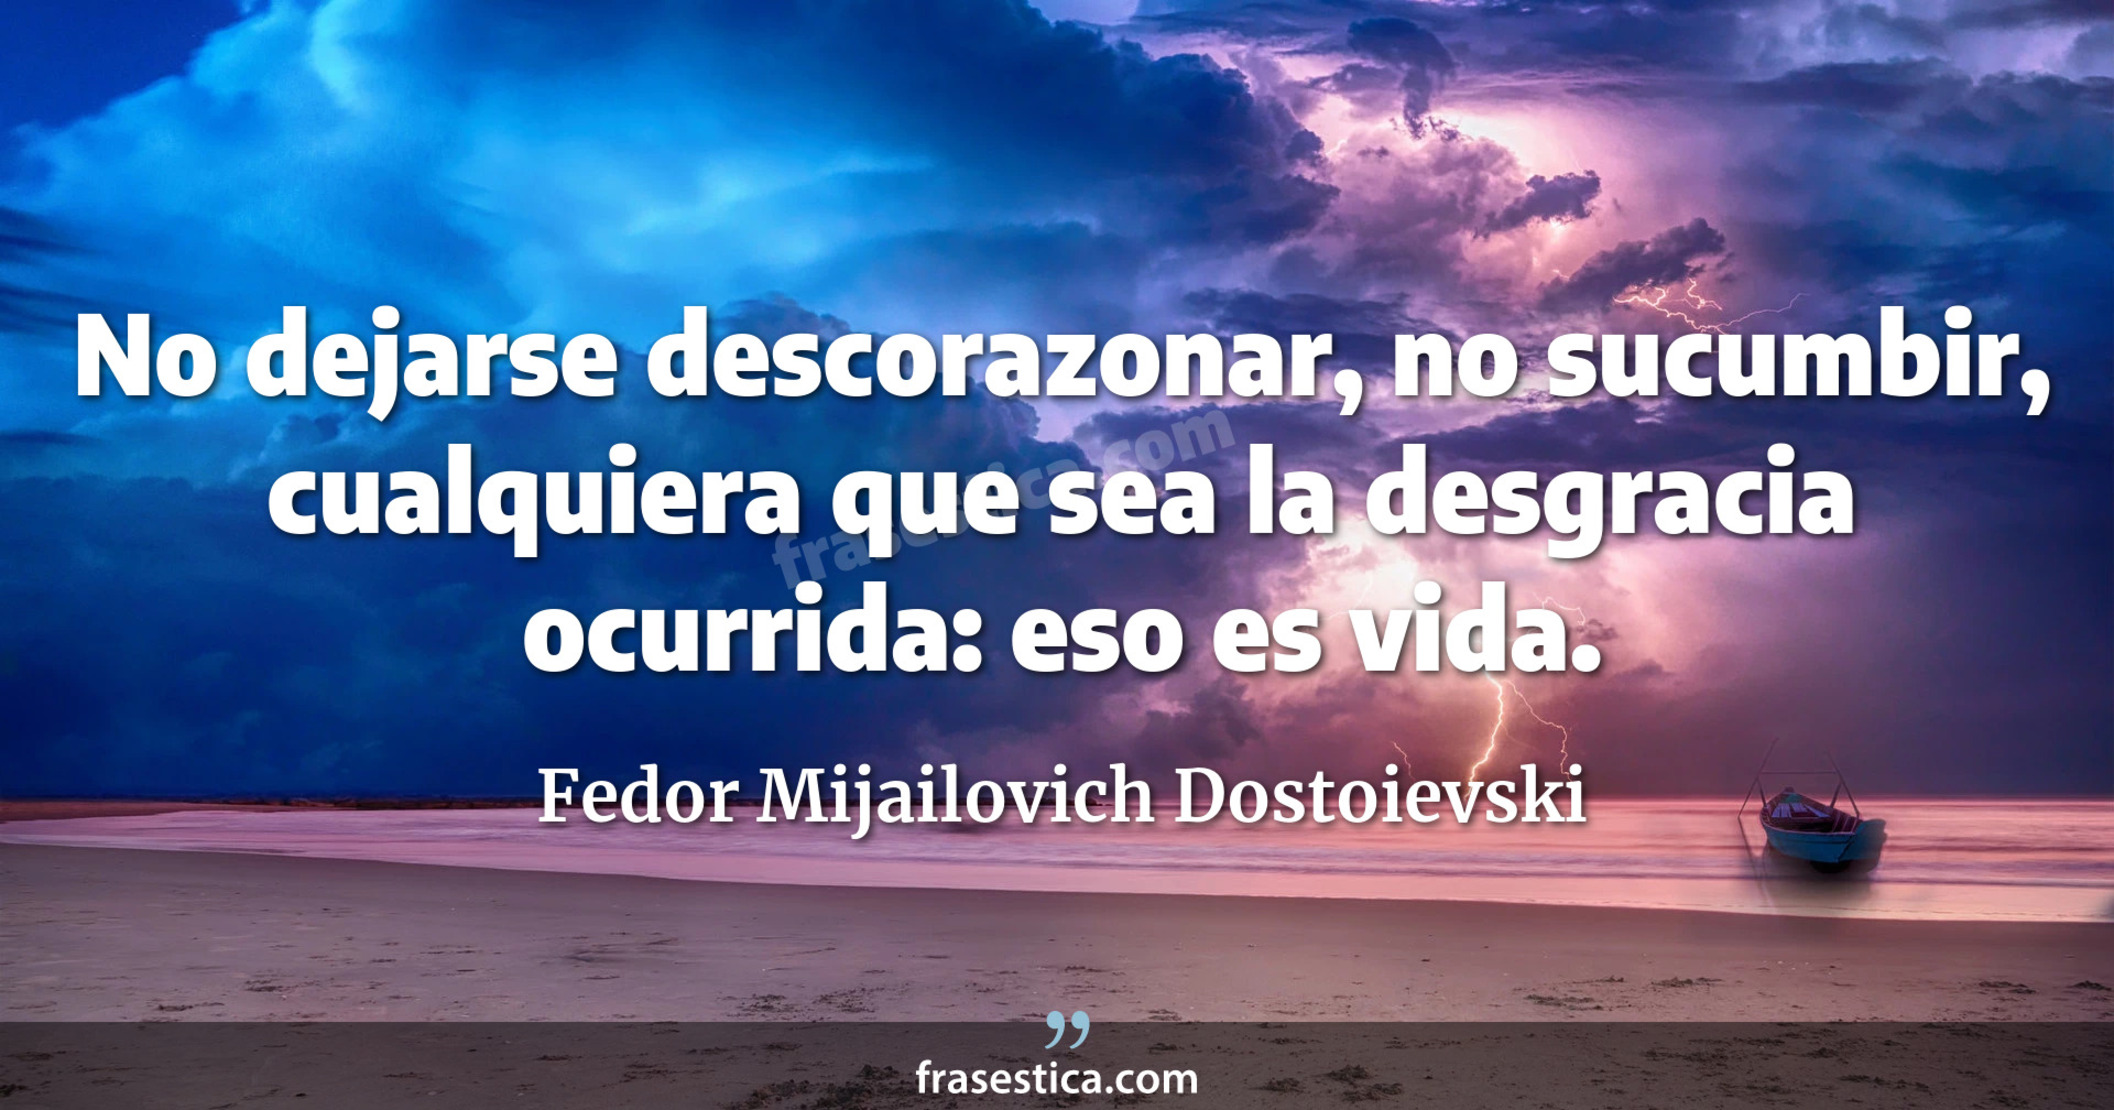 No dejarse descorazonar, no sucumbir, cualquiera que sea la desgracia ocurrida: eso es vida. - Fedor Mijailovich Dostoievski